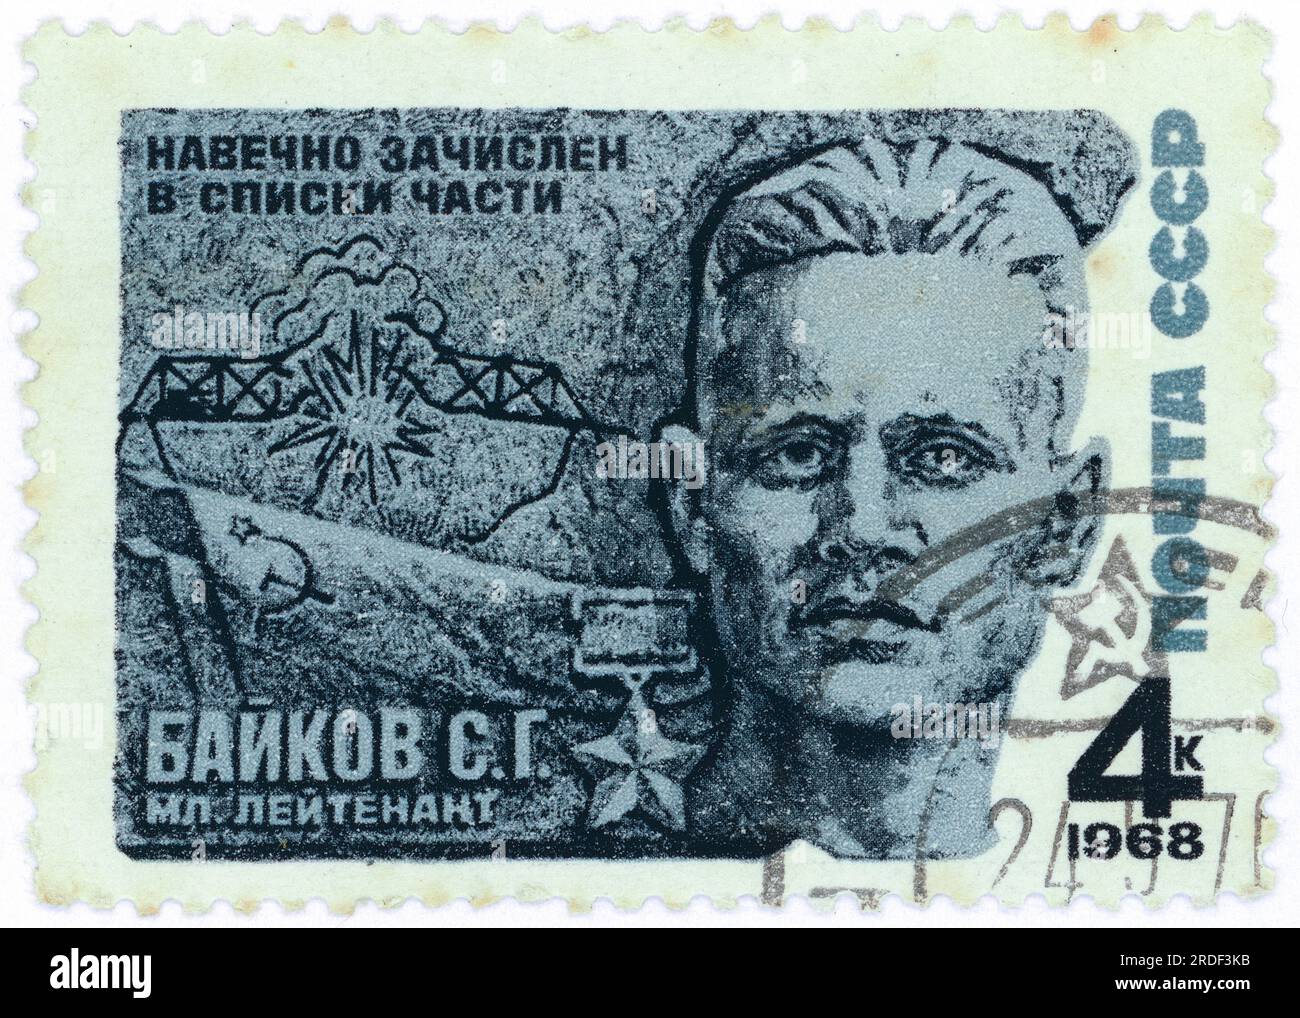 Junior Lieutenant S.G. Baikov (1914-1941) - héros de guerre de l'URSS. Délivré en 1968 en URSS. Valeur faciale : 4k (4 kopeks). Le sous-lieutenant Semyon Grigorievitch Baikov (1914-1941), est mort héroïquement alors qu'il exploitait le pont sur la rivière Velikaya près de Pskov. Banque D'Images